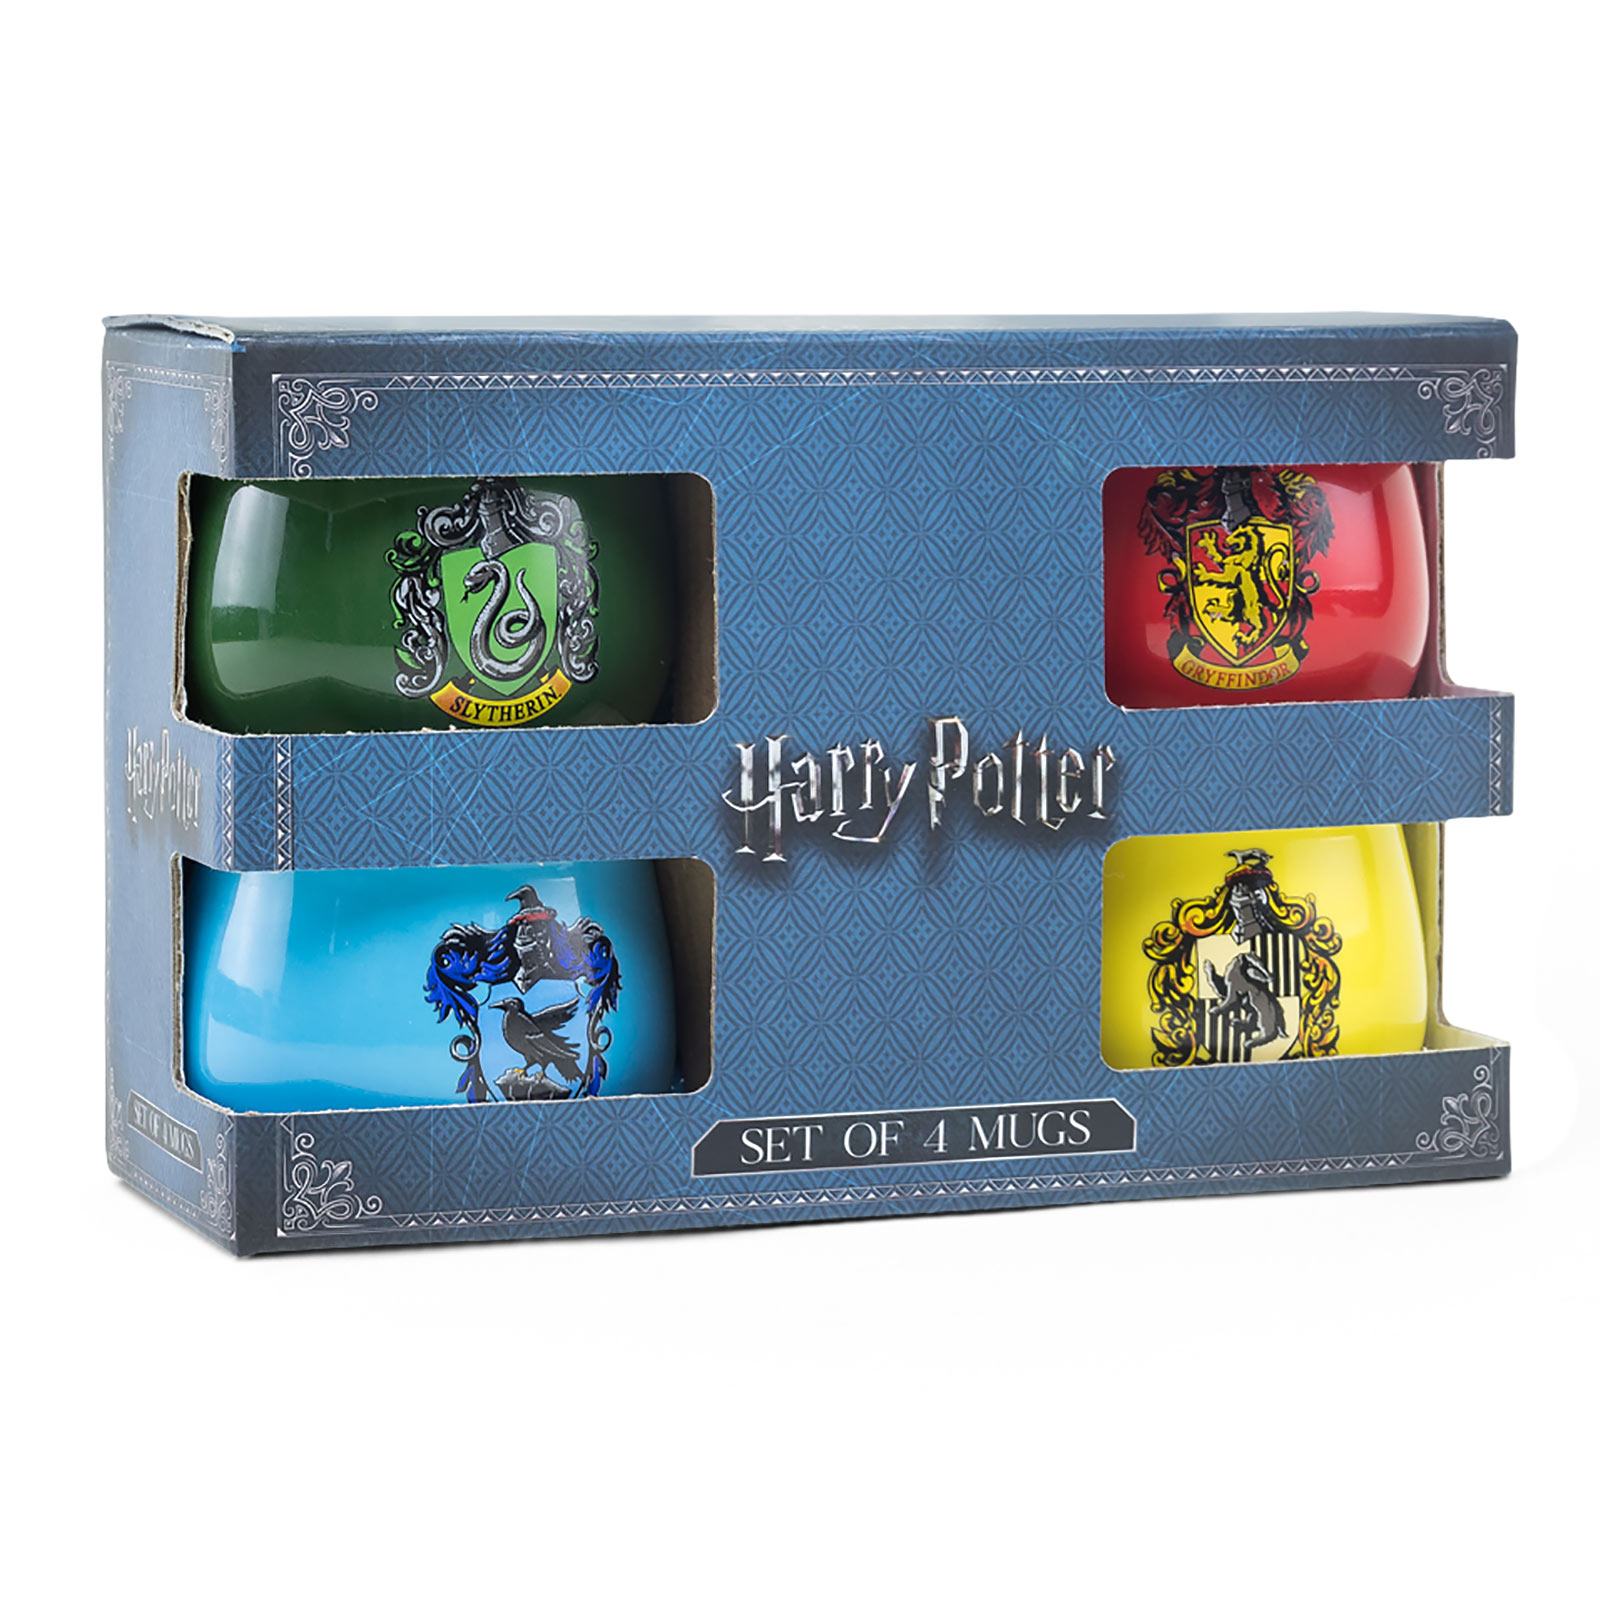 Harry Potter - House Crests Mug Set